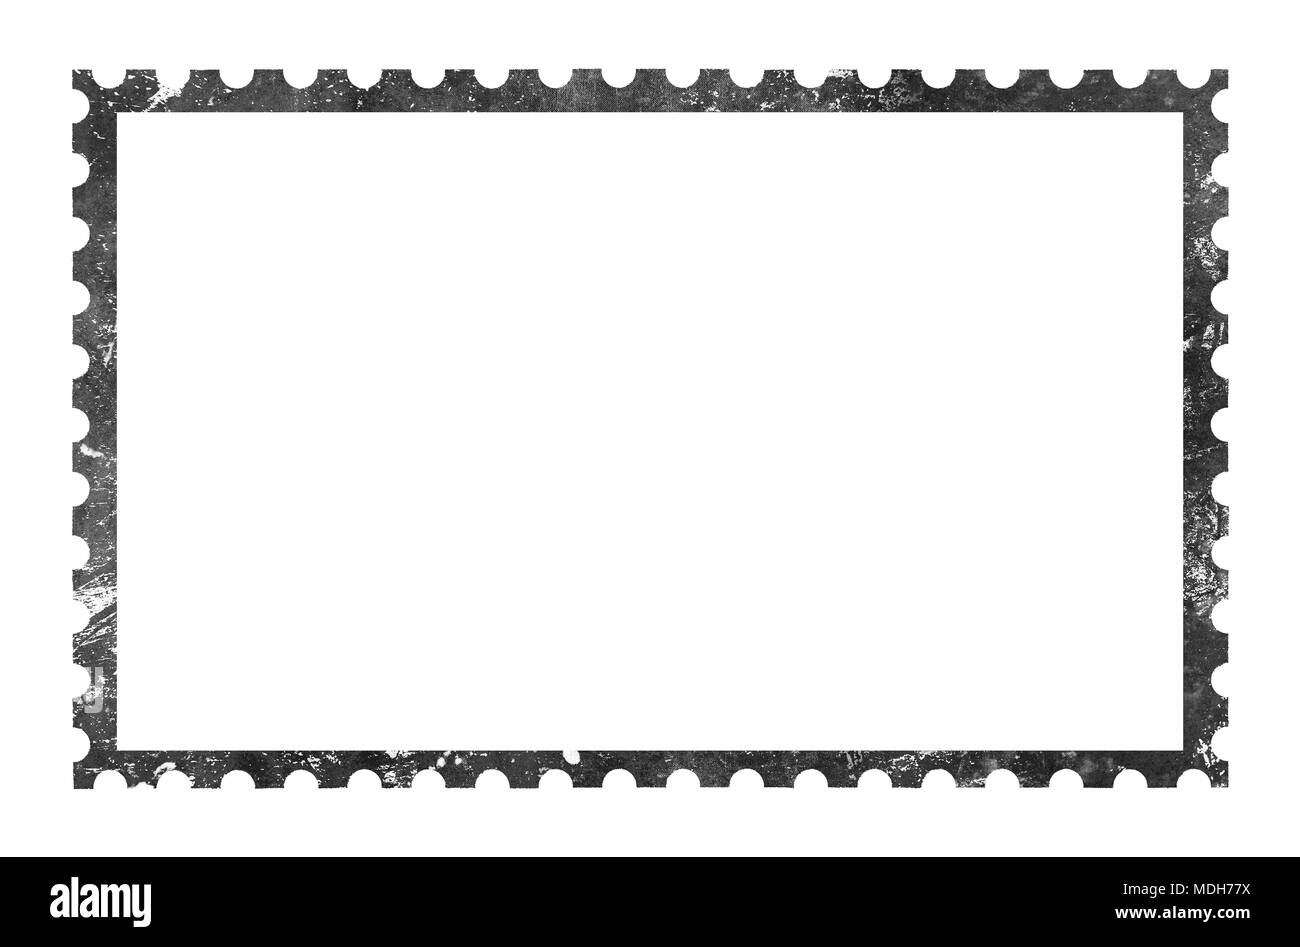 Ancienne rétro grunge style papier vierge cadre timbre-poste isolé sur fond blanc Banque D'Images